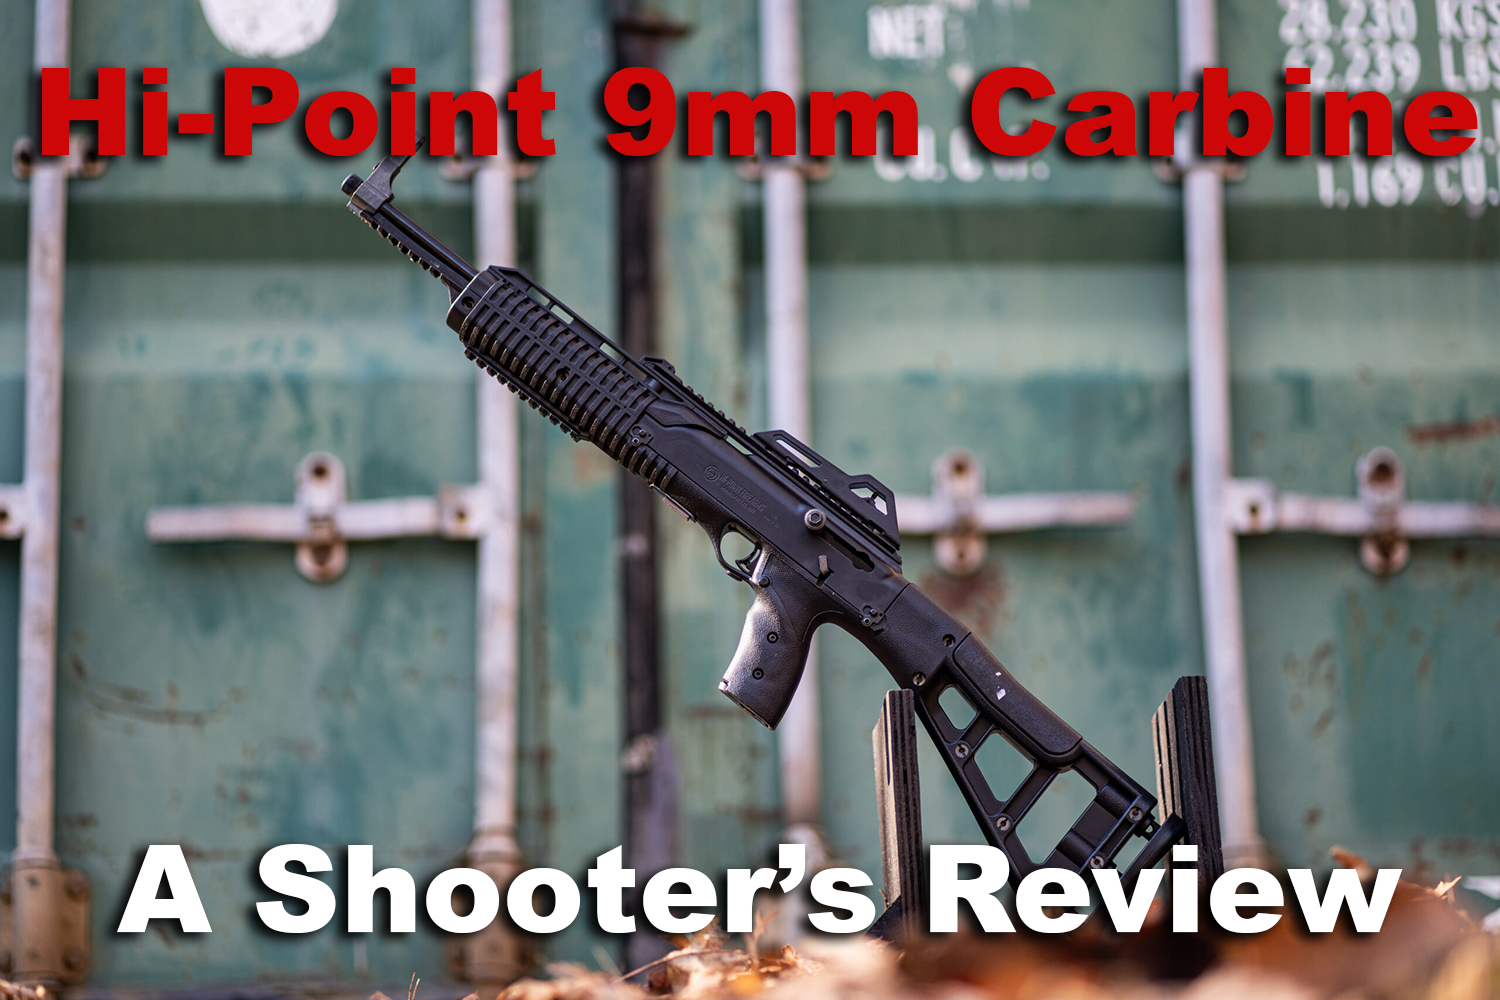 9mm carbine machine gun